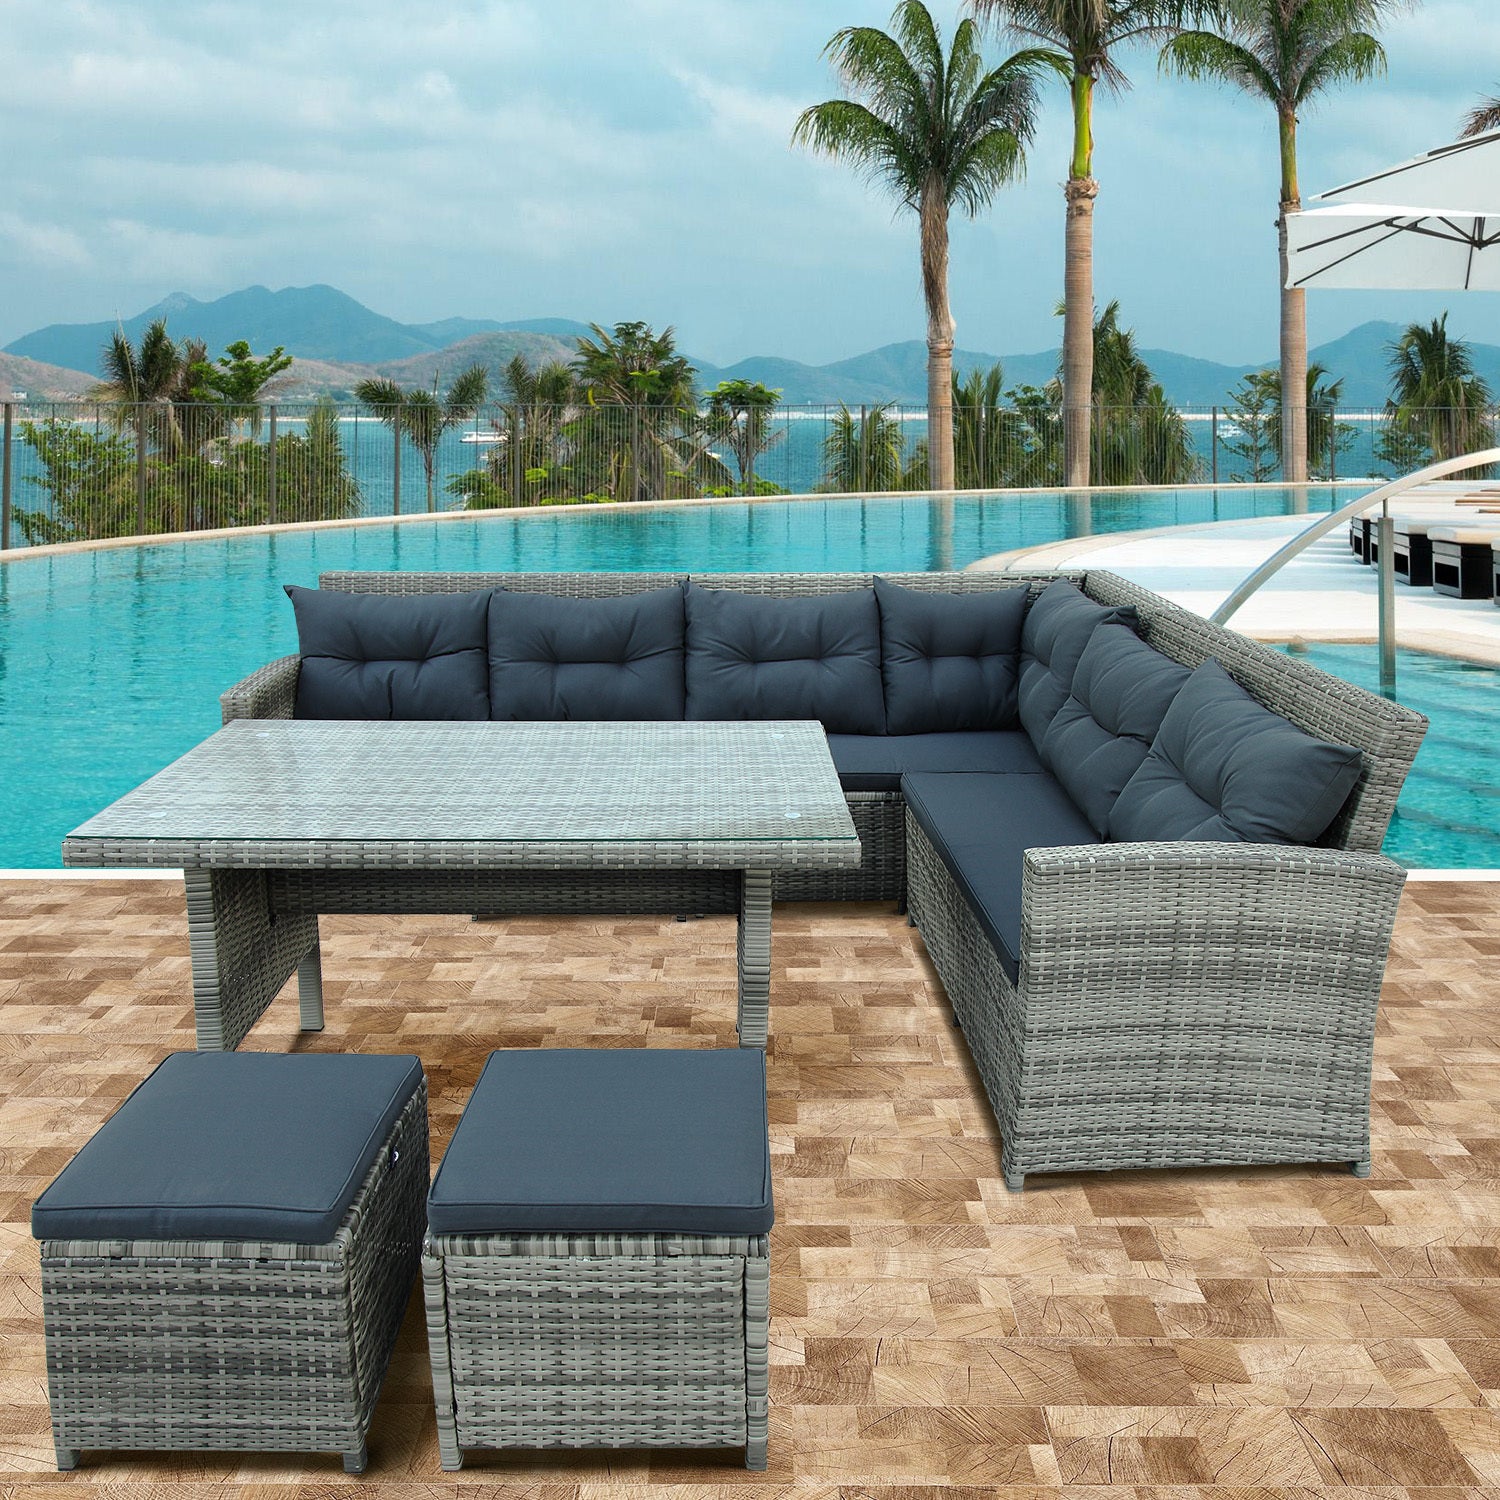 Patio Furniture Outdoor Sectional Sofa Set, Gray (6Pcs)